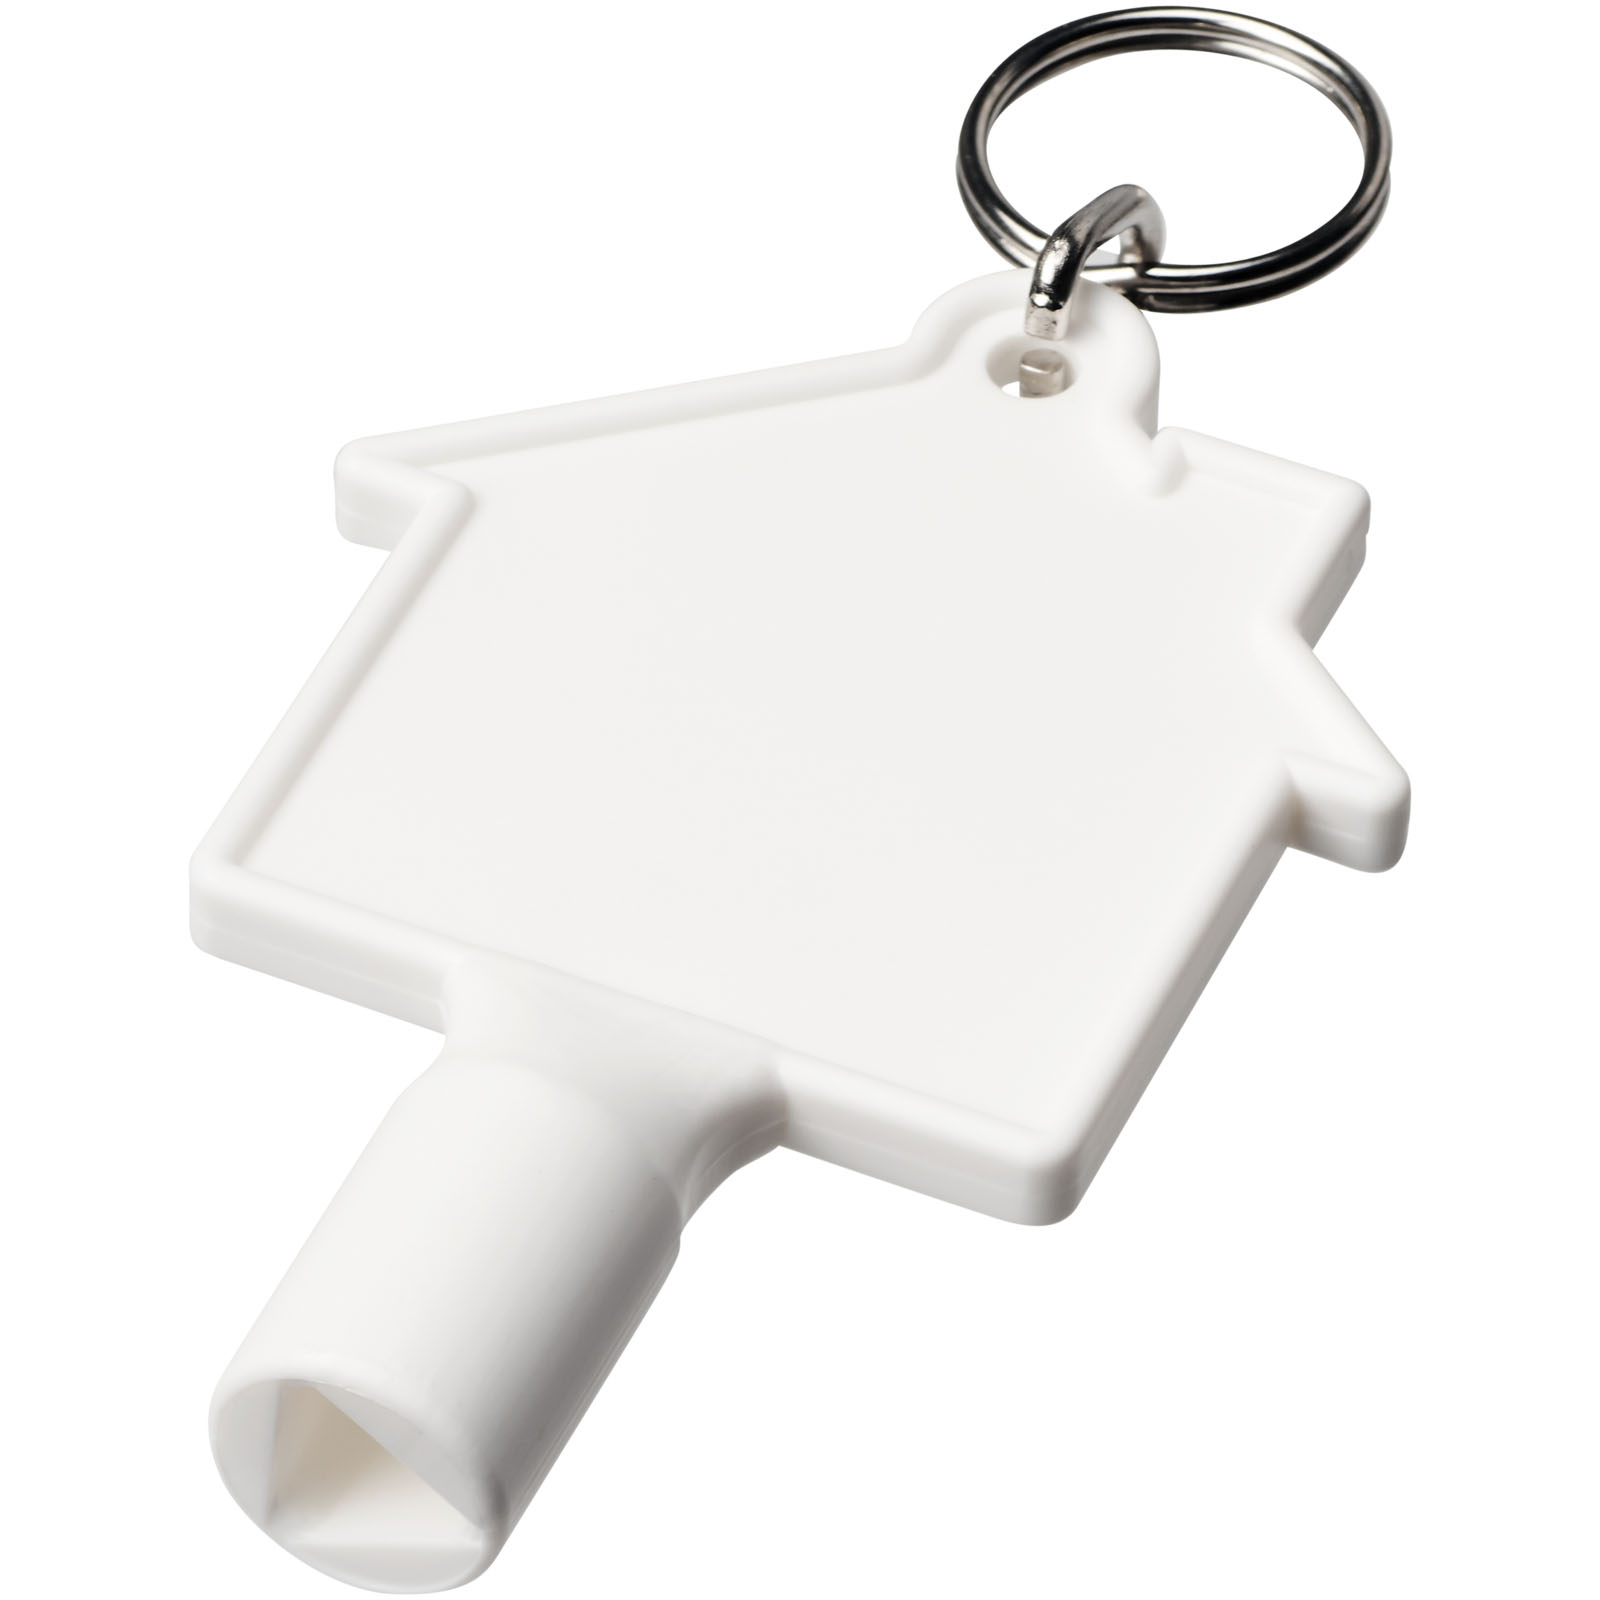 Advertising Keychains & Keyrings - Maximilian house-shaped recycled utility key keychain - 0